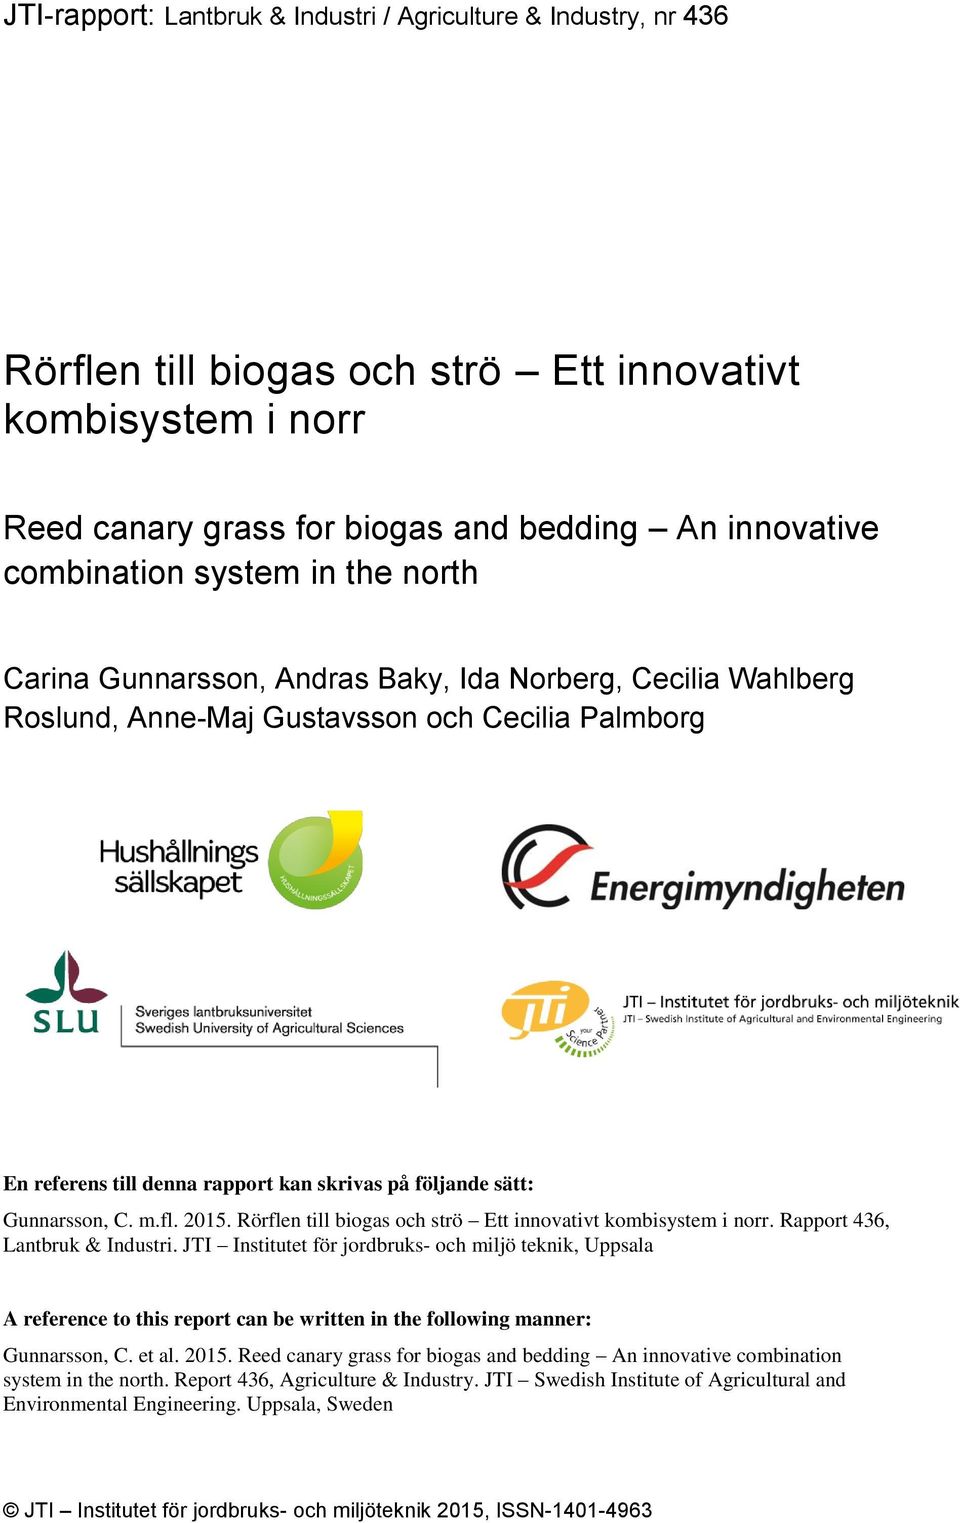 Gunnarsson, C. m.fl. 2015. Rörflen till biogas och strö Ett innovativt kombisystem i norr. Rapport 436, Lantbruk & Industri.